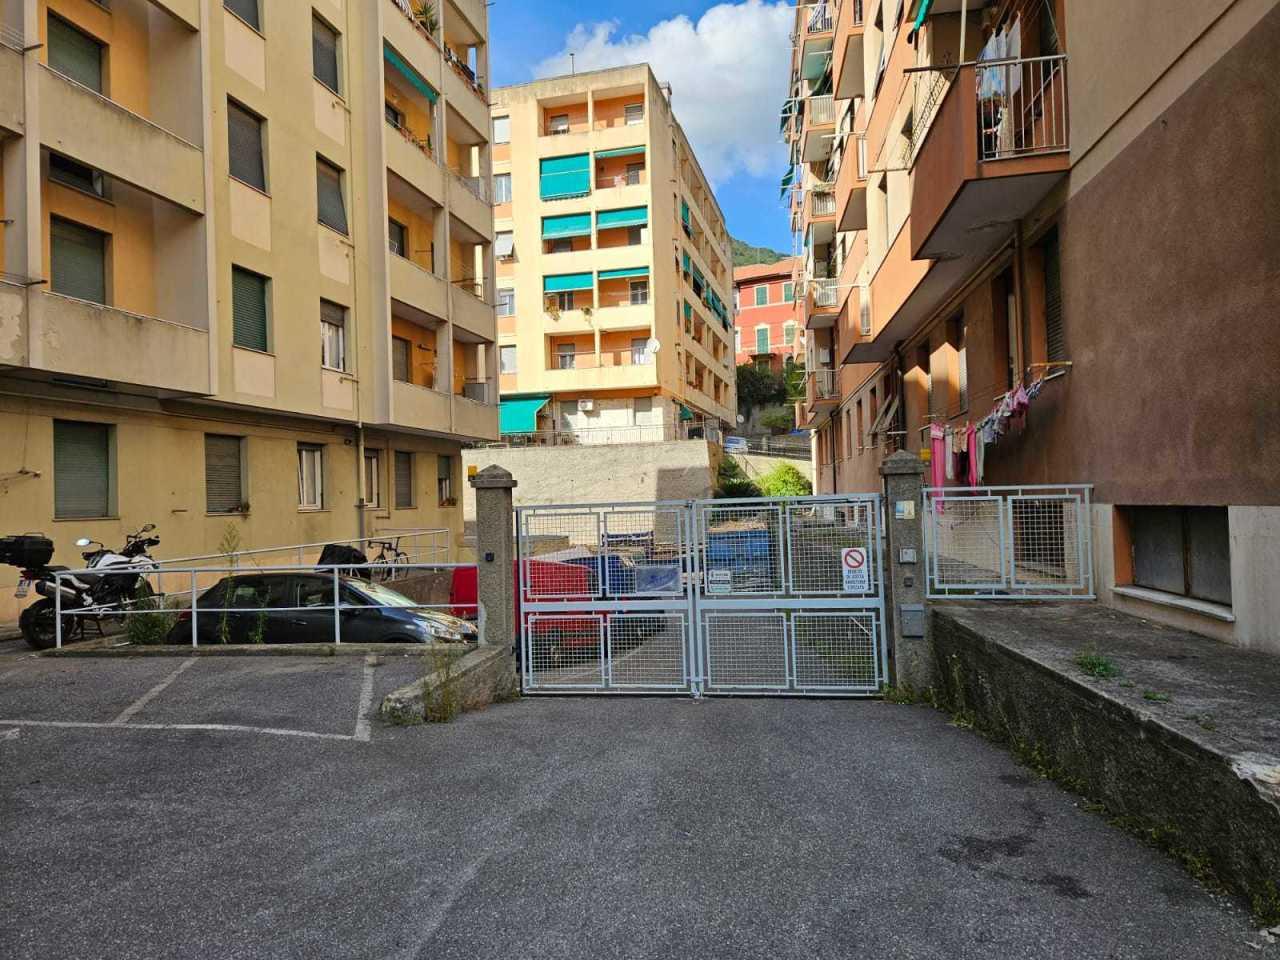 Vendita Locali commerciali, Genova foto